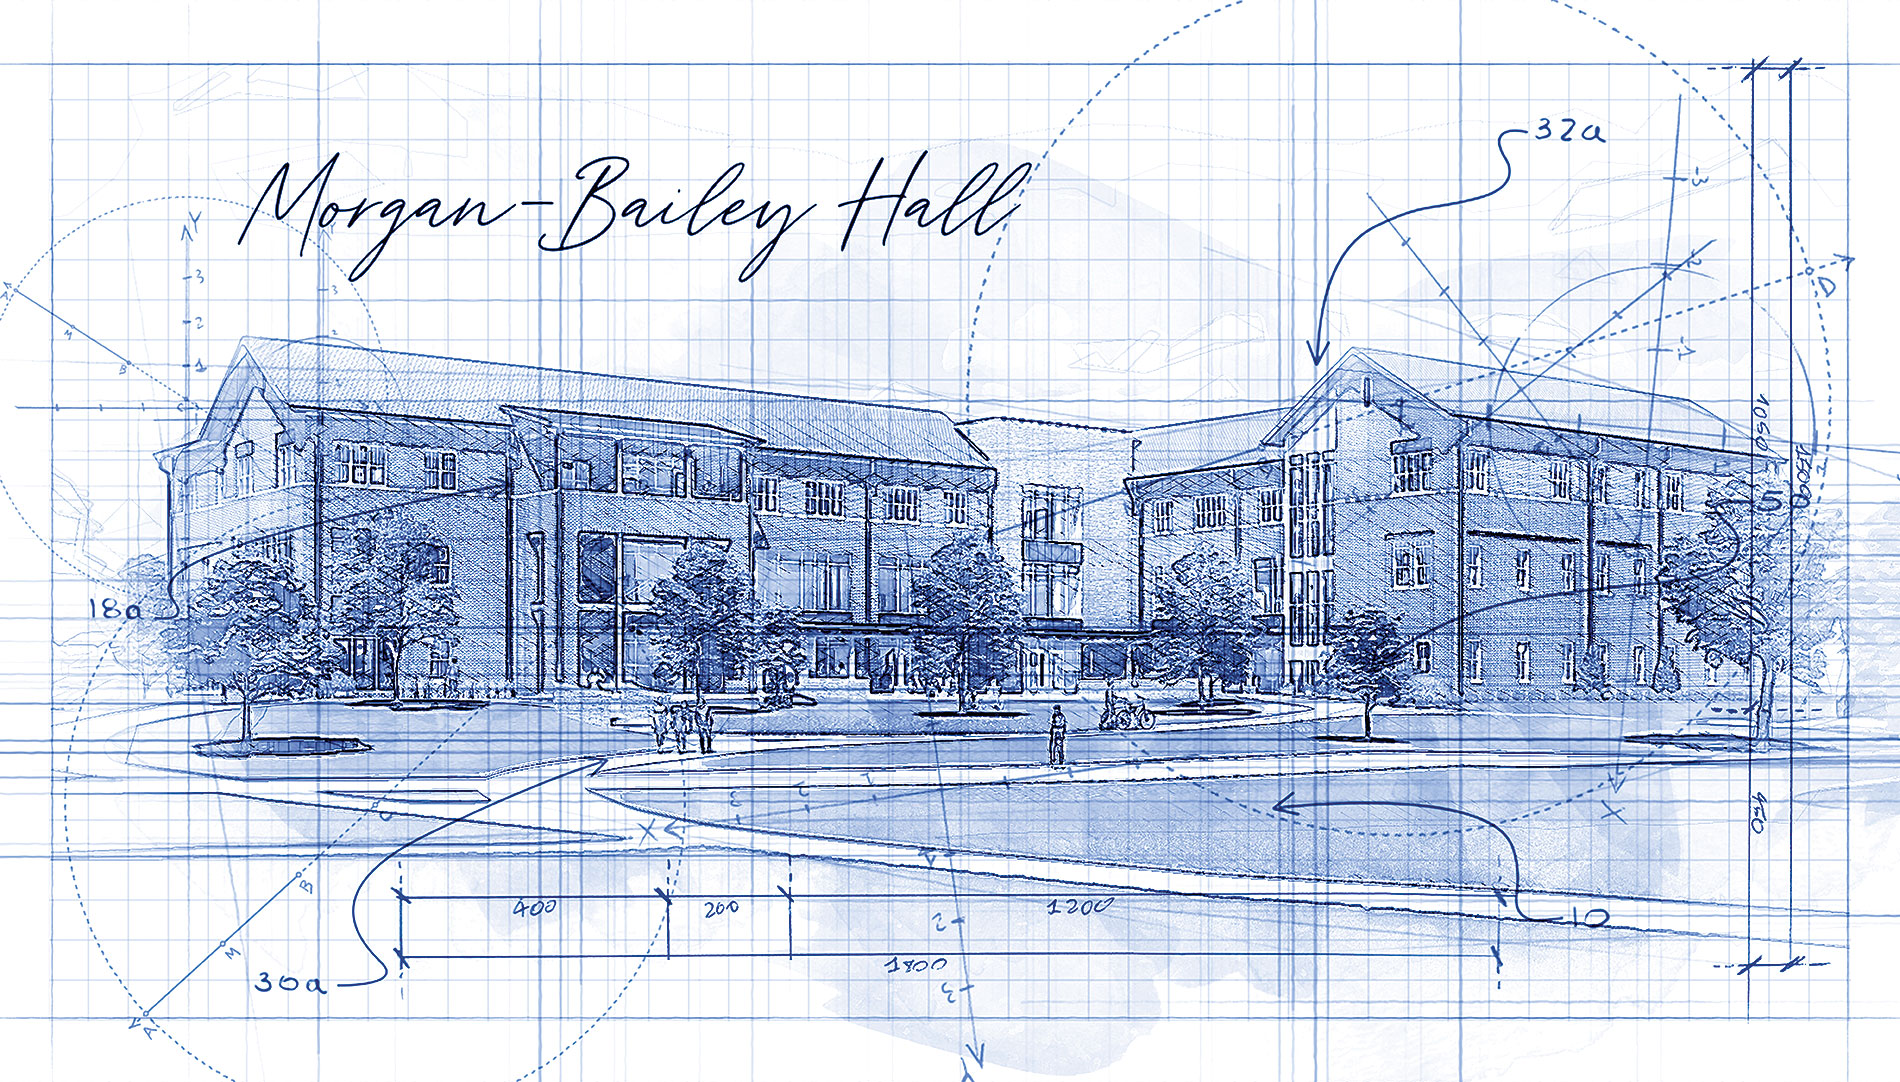 Morgan Bailey Hall blueprint image